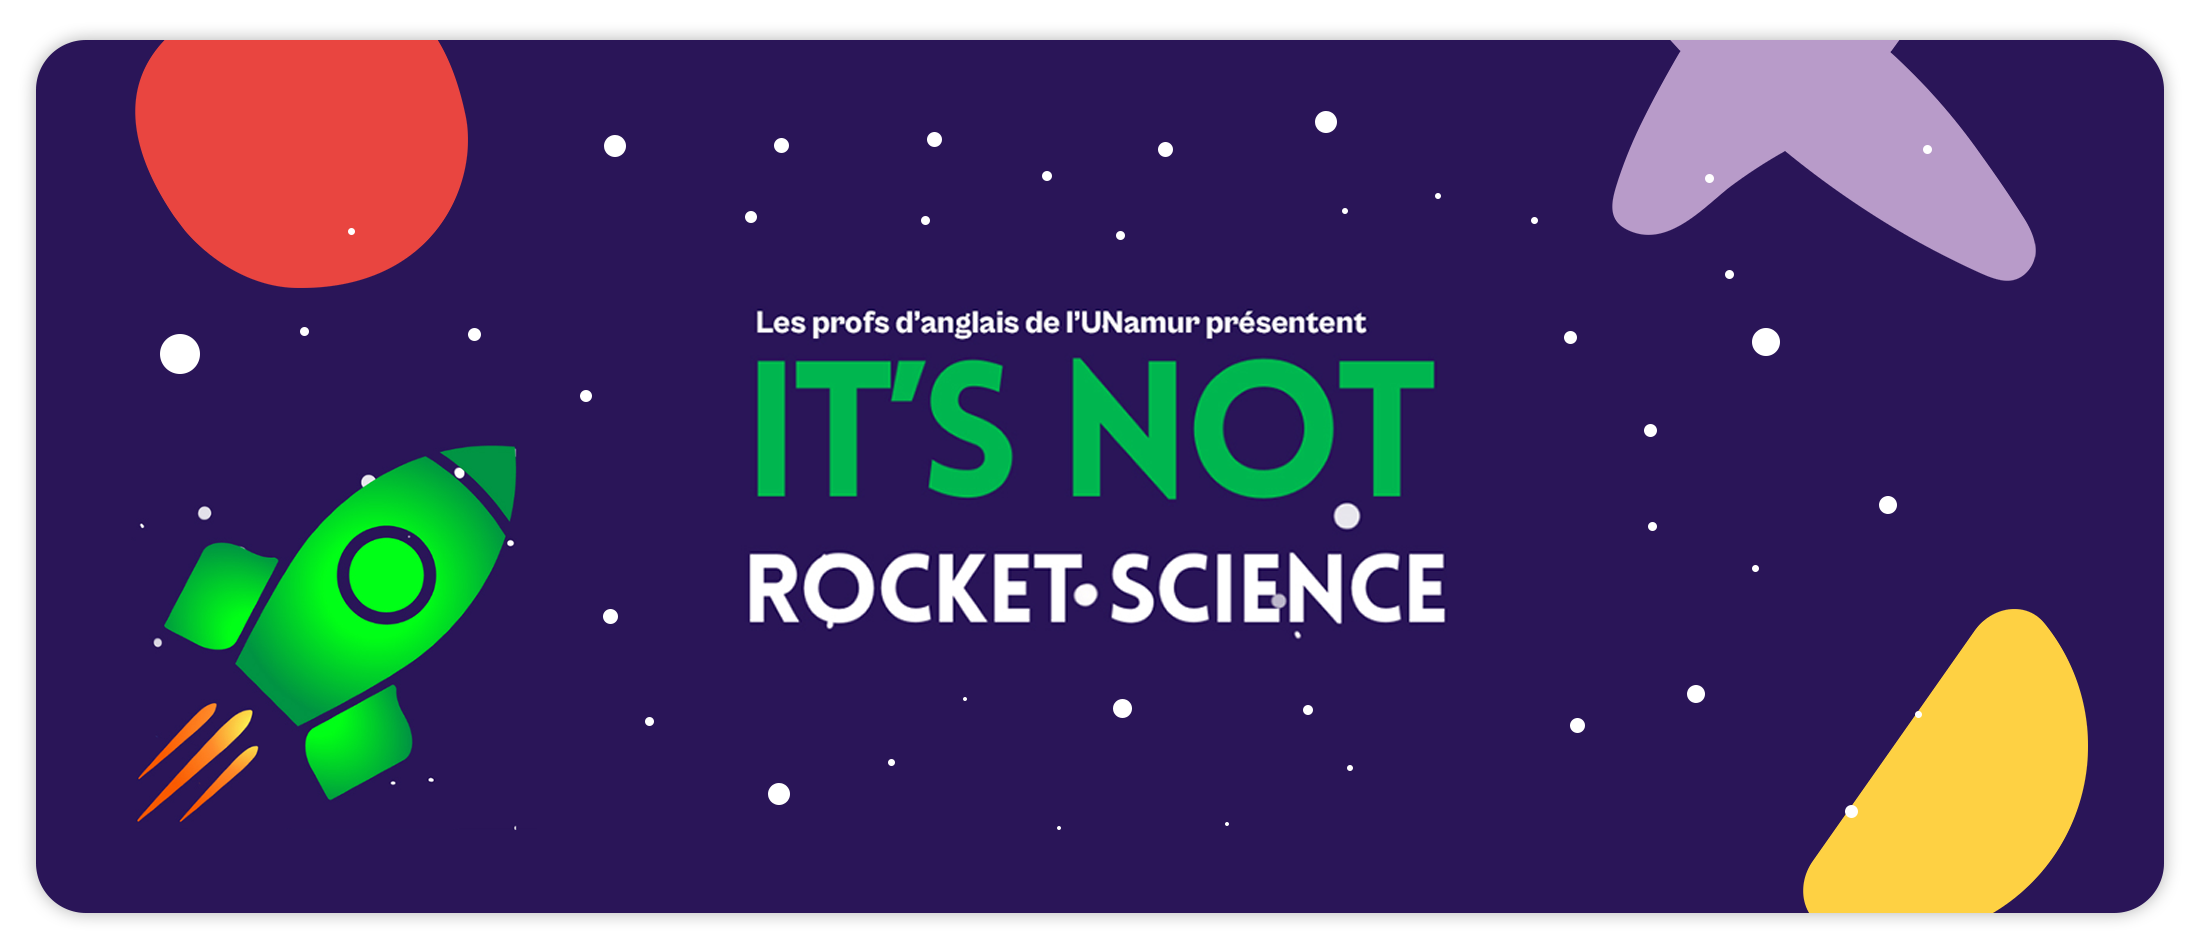 Rocket-science